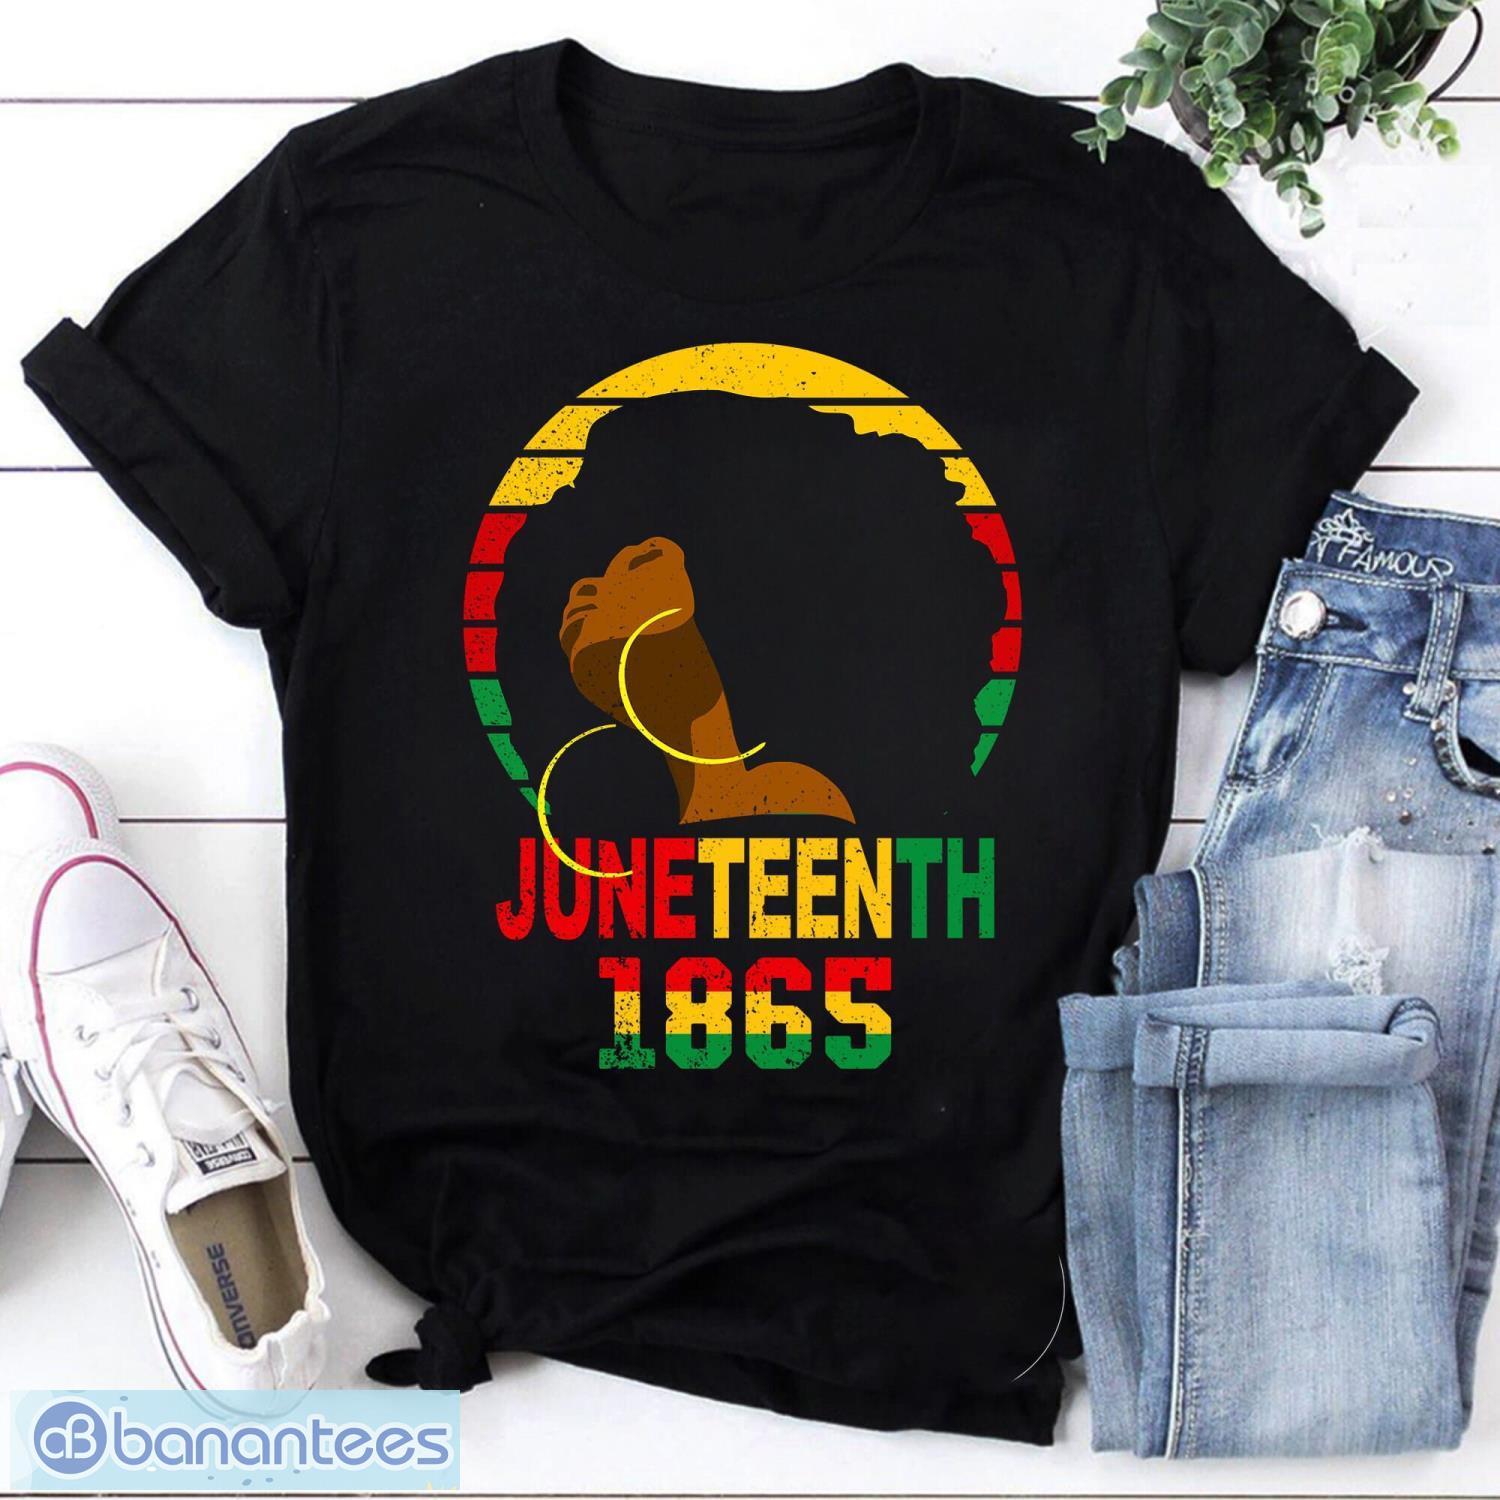 Vintage Juneteenth 1865 Black Girl Vintage T-Shirt, Juneteenth Shirt, Black Lives Matter Shirt Product Photo 1